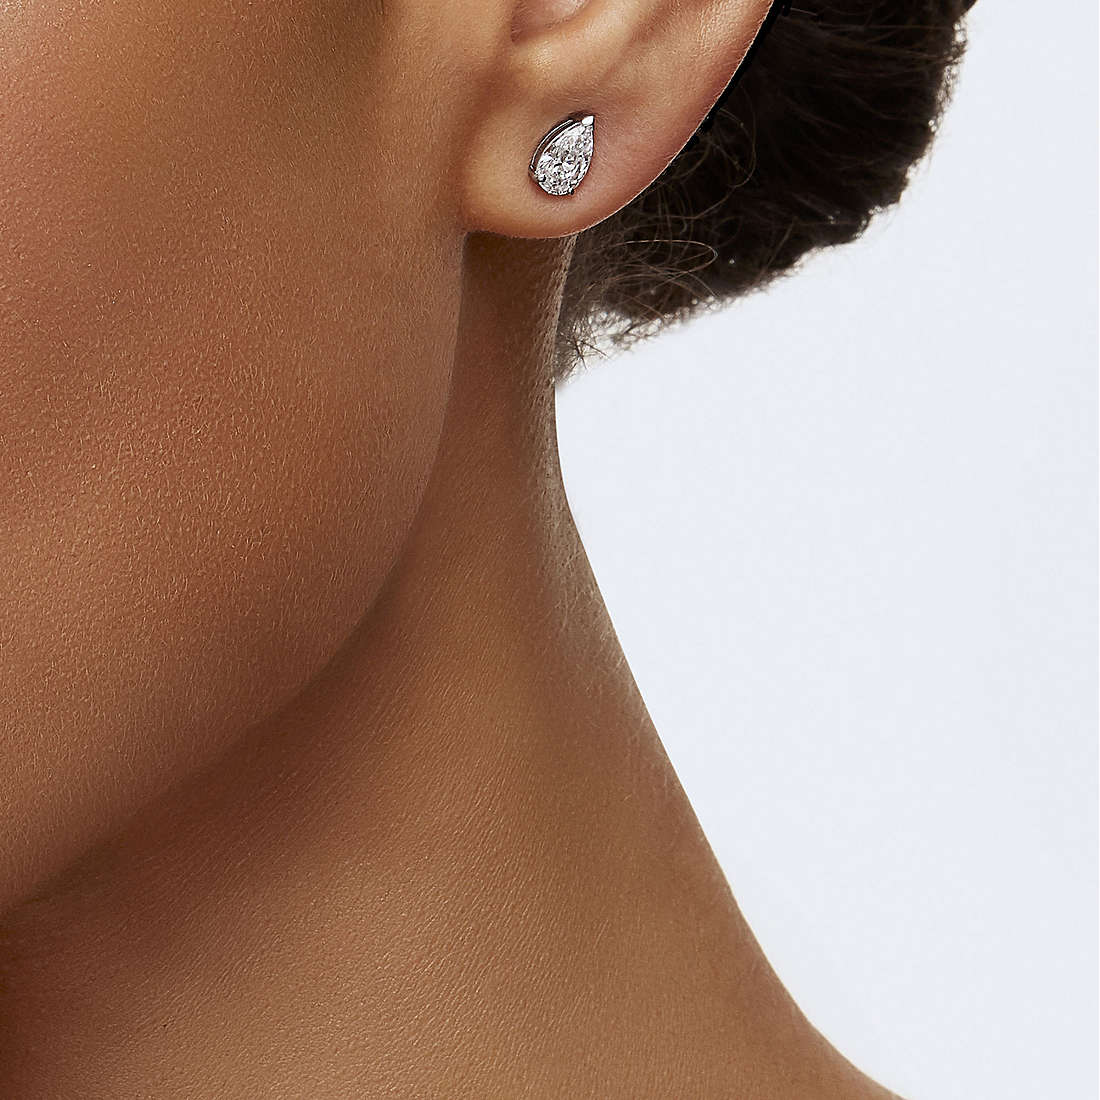 Swarovski earrings Attract woman 5563121 wearing